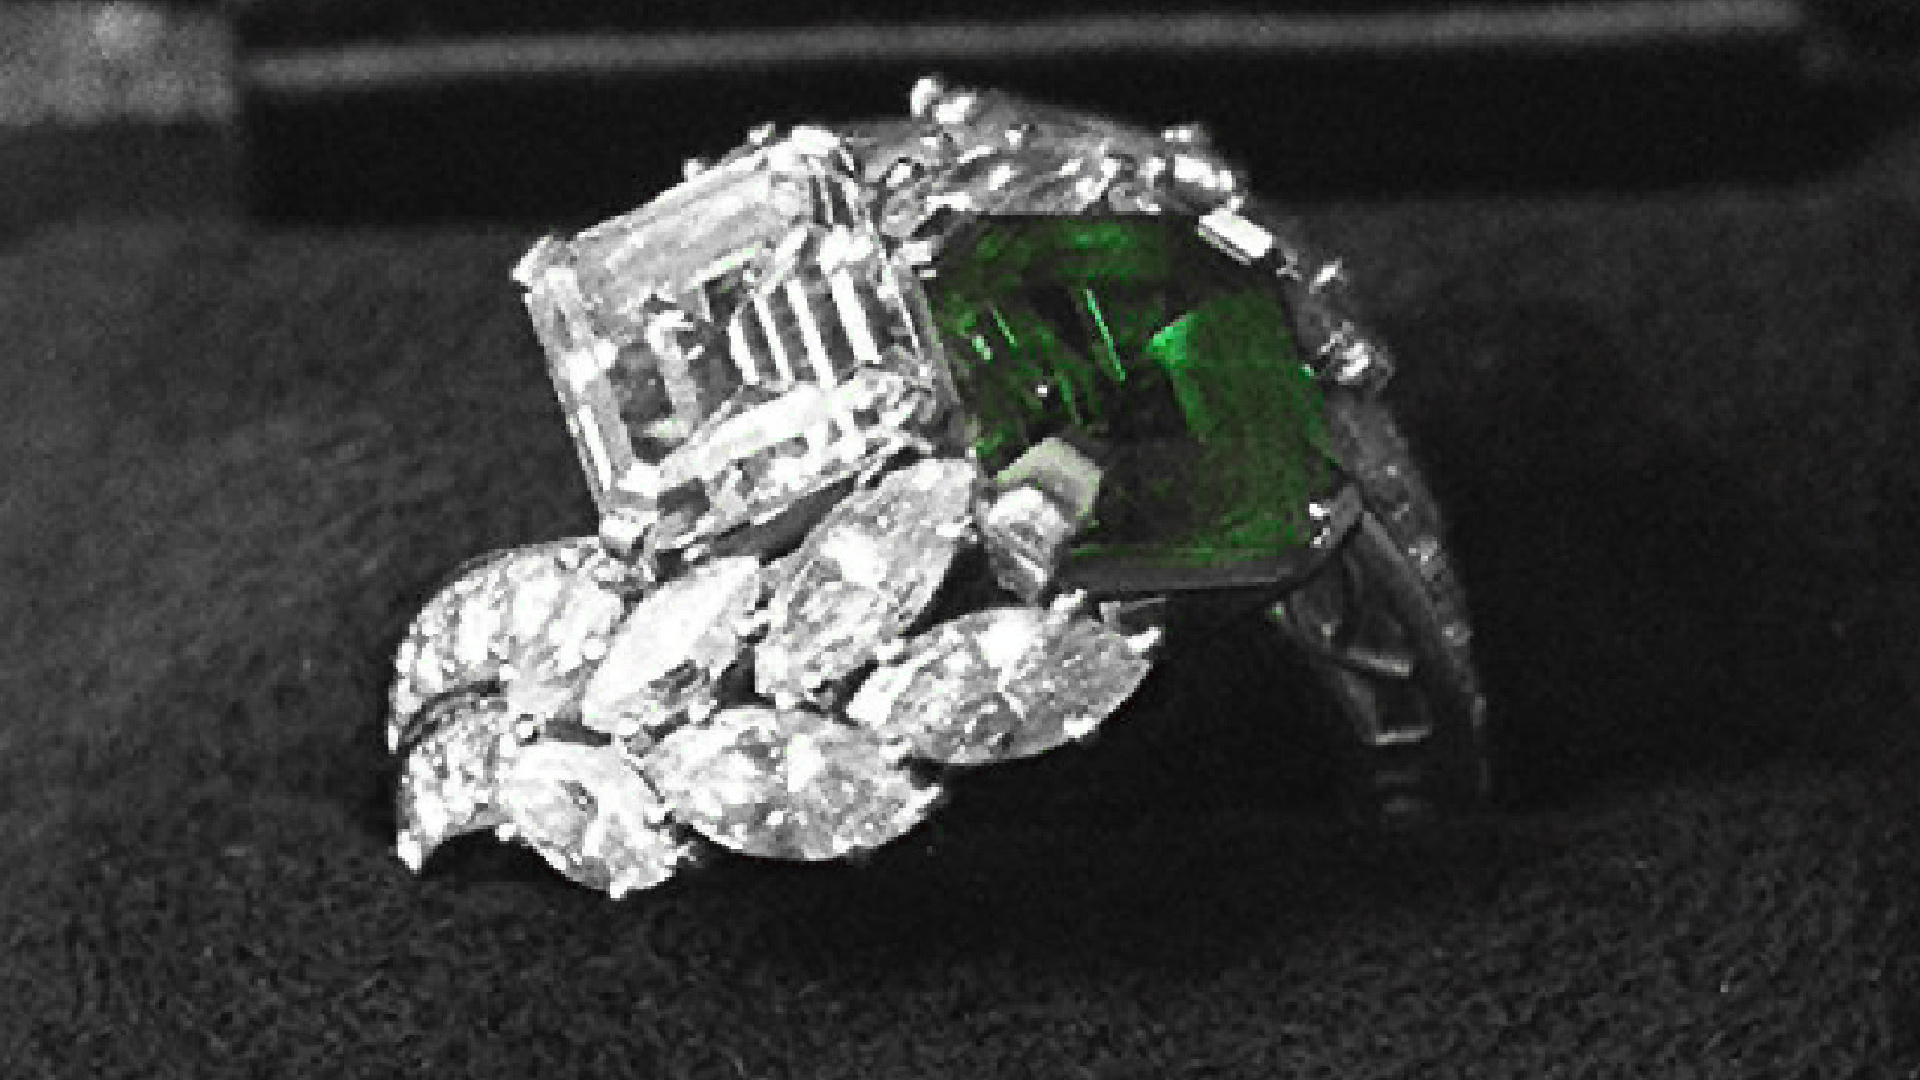 <p>El anillo se exhibe en la exhibición de Jackie Kennedy en la biblioteca JFK. Presentaba un diamante de 2,88 quilates junto con una esmeralda de 2,84 quilates, que estaban rodeados por grupos de diamantes baguette con forma de huso. Más tarde, en 1963 se agregaron al anillo 2,12 quilates adicionales de diamantes de talla redonda y marquesa.</p>